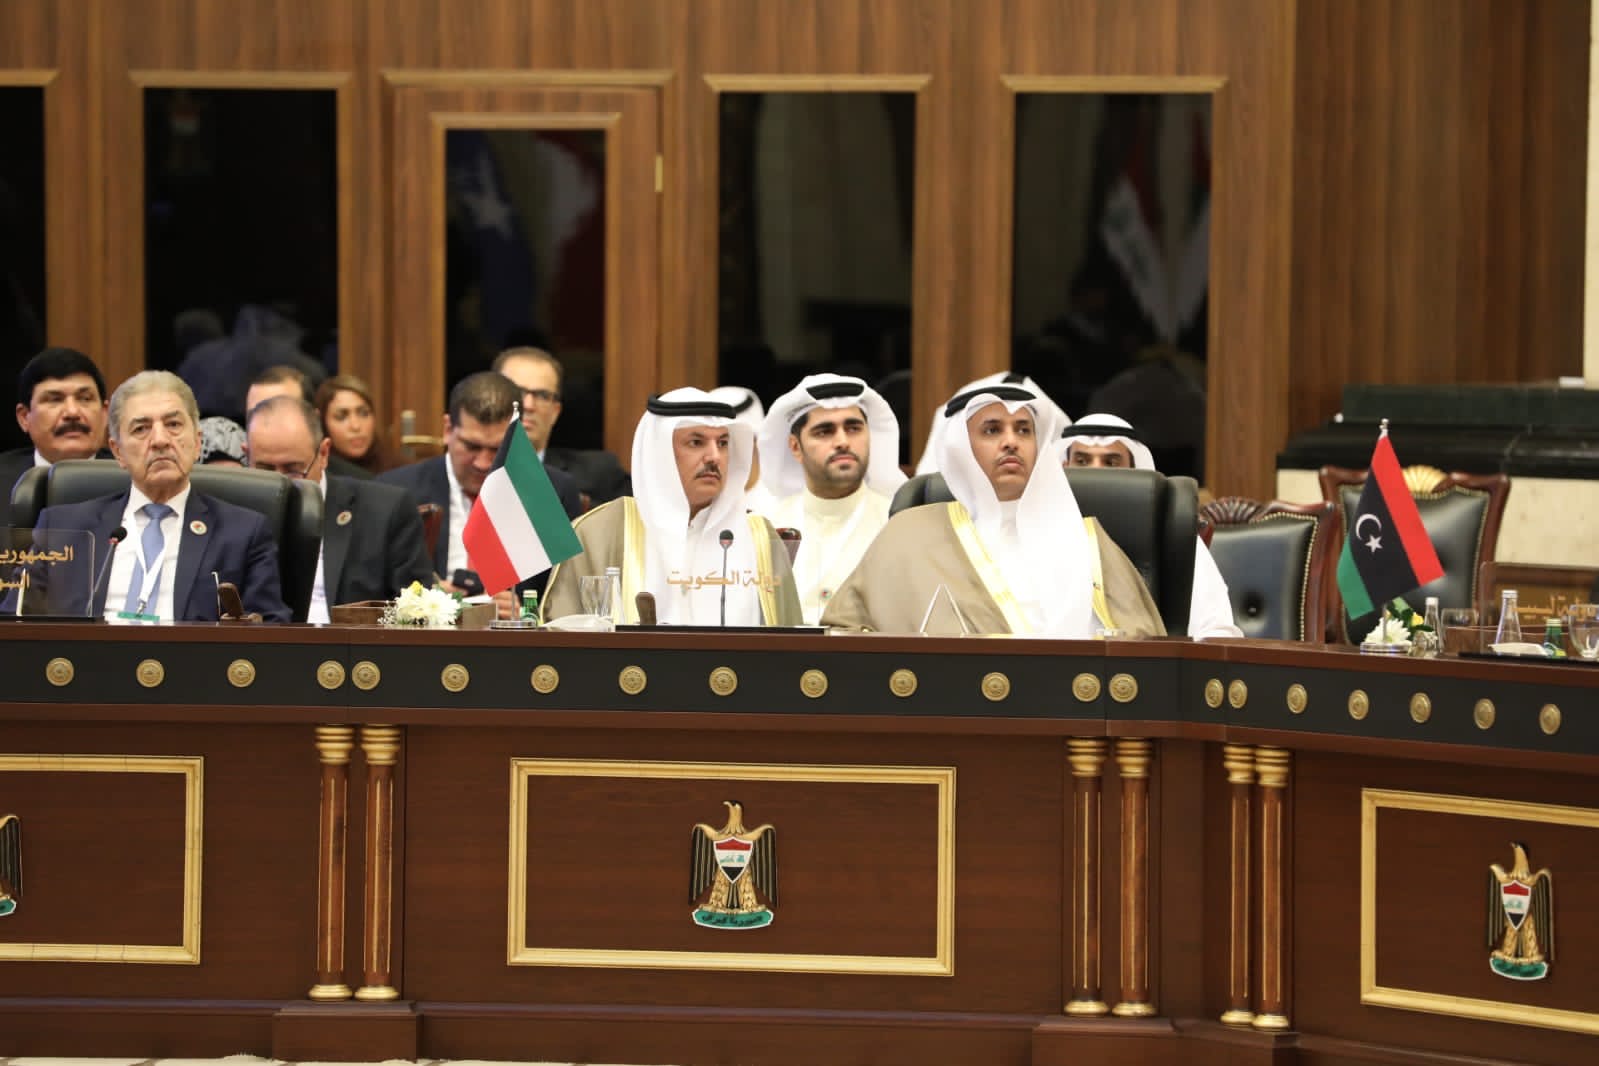  الوفد الكويتي للاتحاد البرلماني العربي يشدد على رفضه القاطع لدعوات التهجير القسري من قطاع غزة